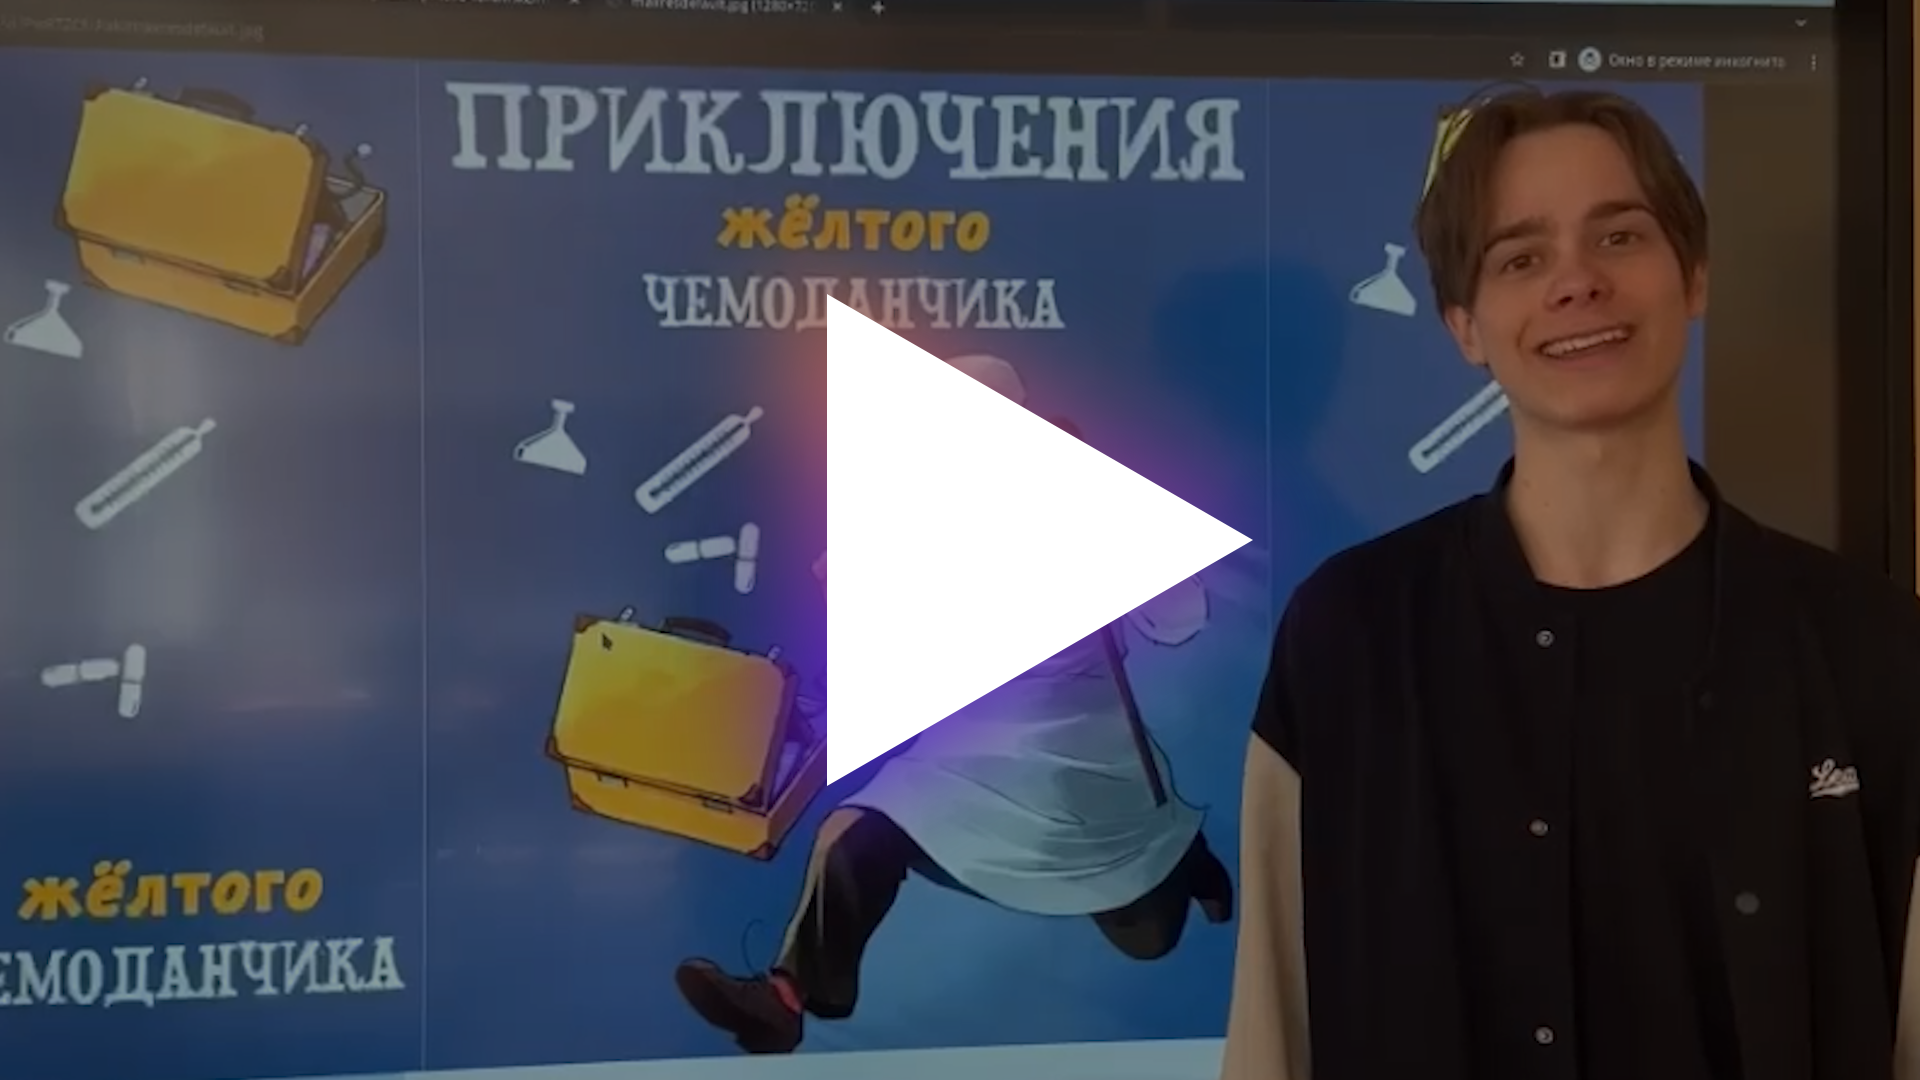 Московское кино в школе: "Приключения жёлтого чемоданчика"